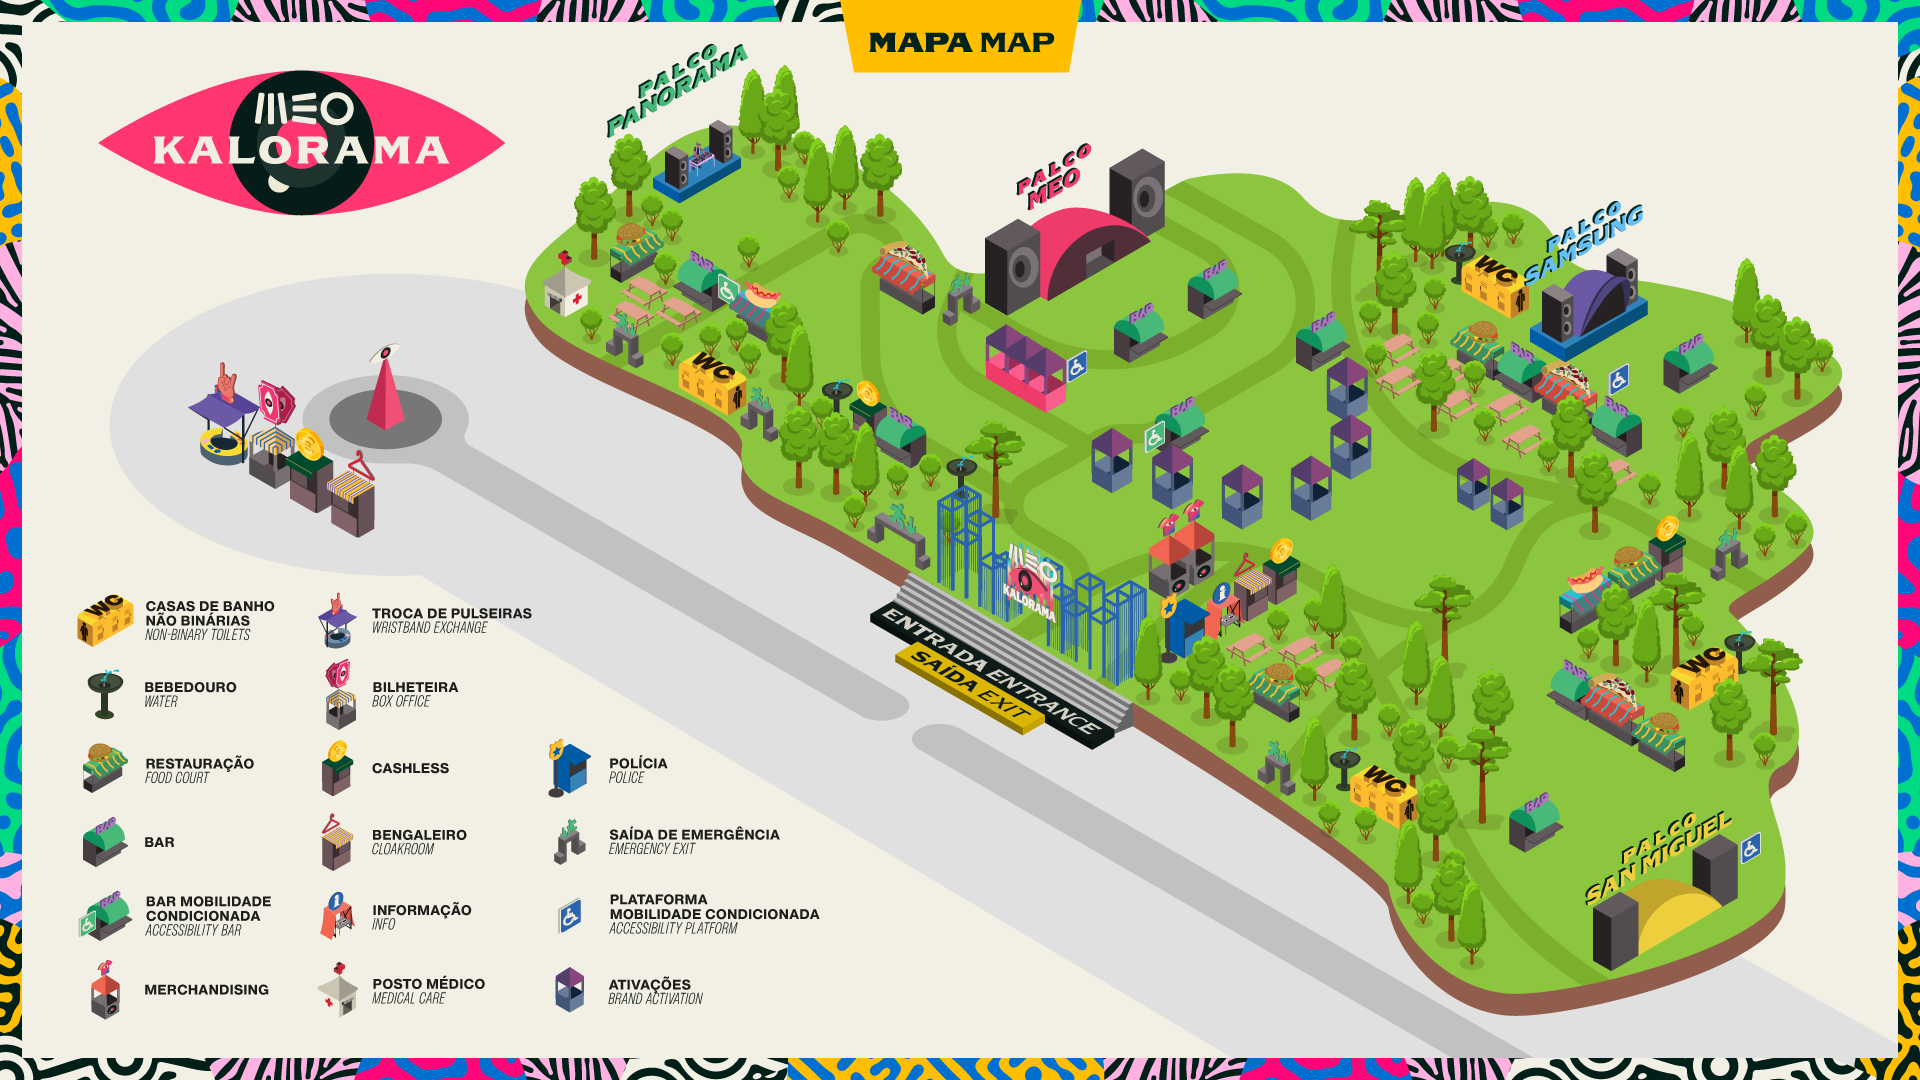 Nesta imagem é possível observar o mapa do festival MEO Kalorama. Demonstra o recinto do festival e os respetivos locais de acesso dentro e fora do mesmo.